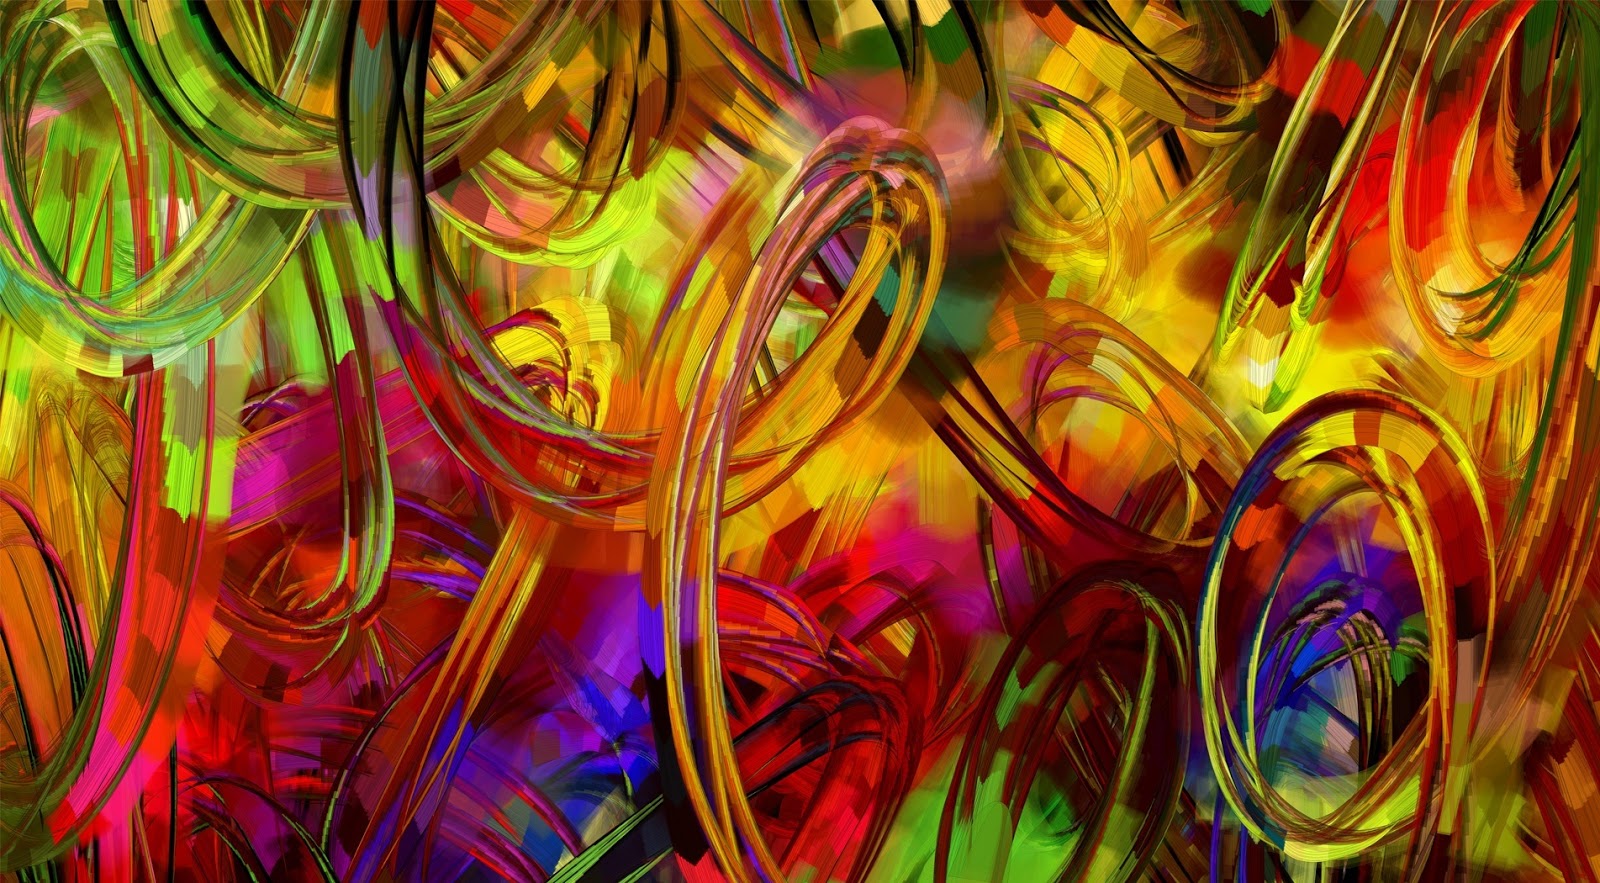 Schilderij met gekleurde cirkels  HD Wallpapers